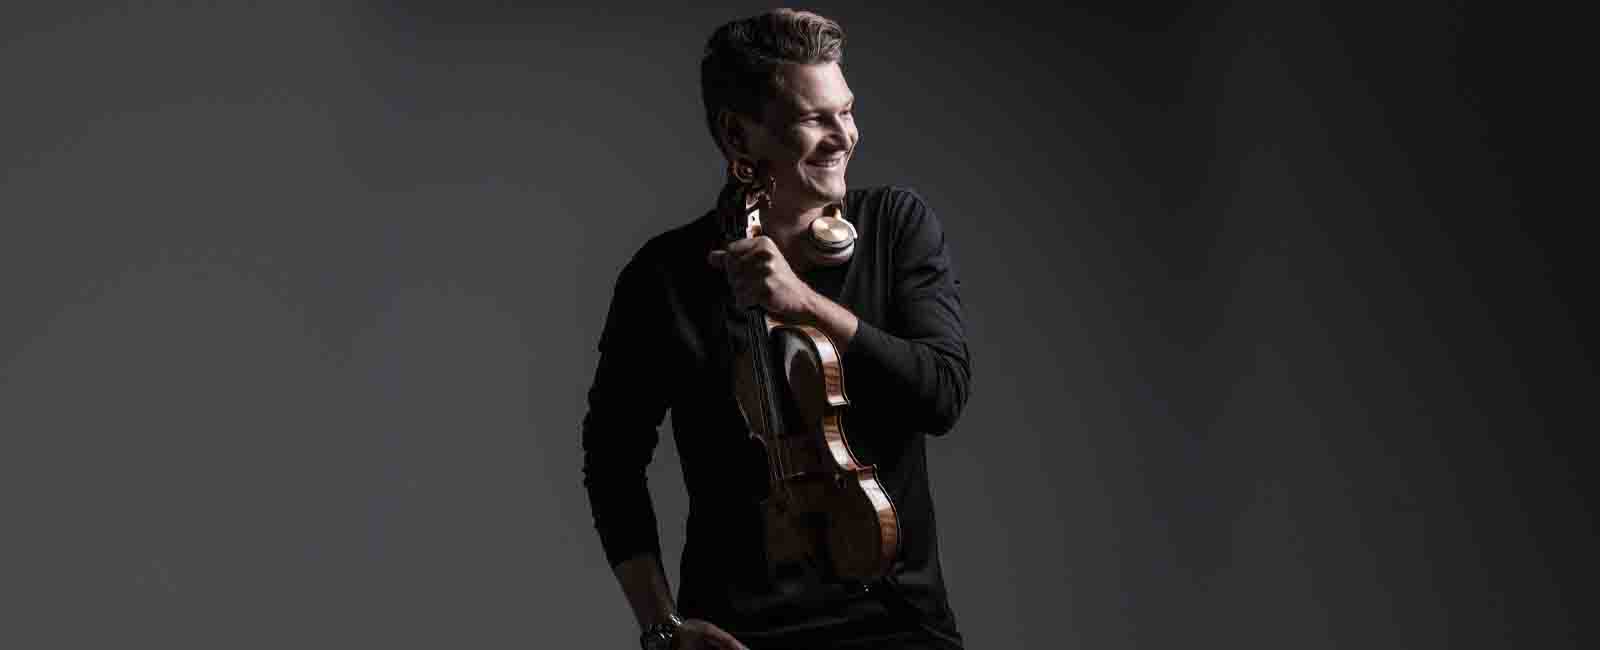 Alexandre Da Costa - Stradivarius intime